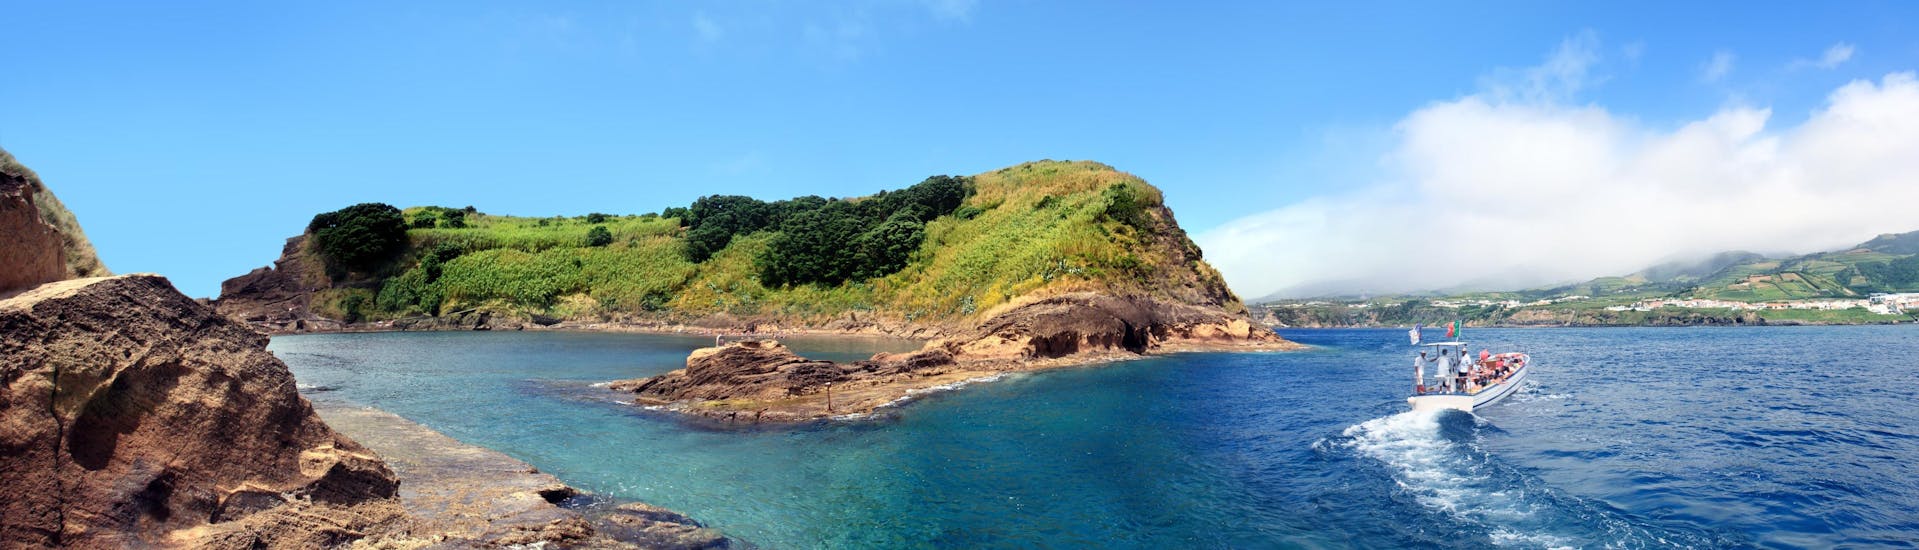 Vista de la isla de Vila Franca do Campo, un destino popular para los paseos en barco en las Azores.